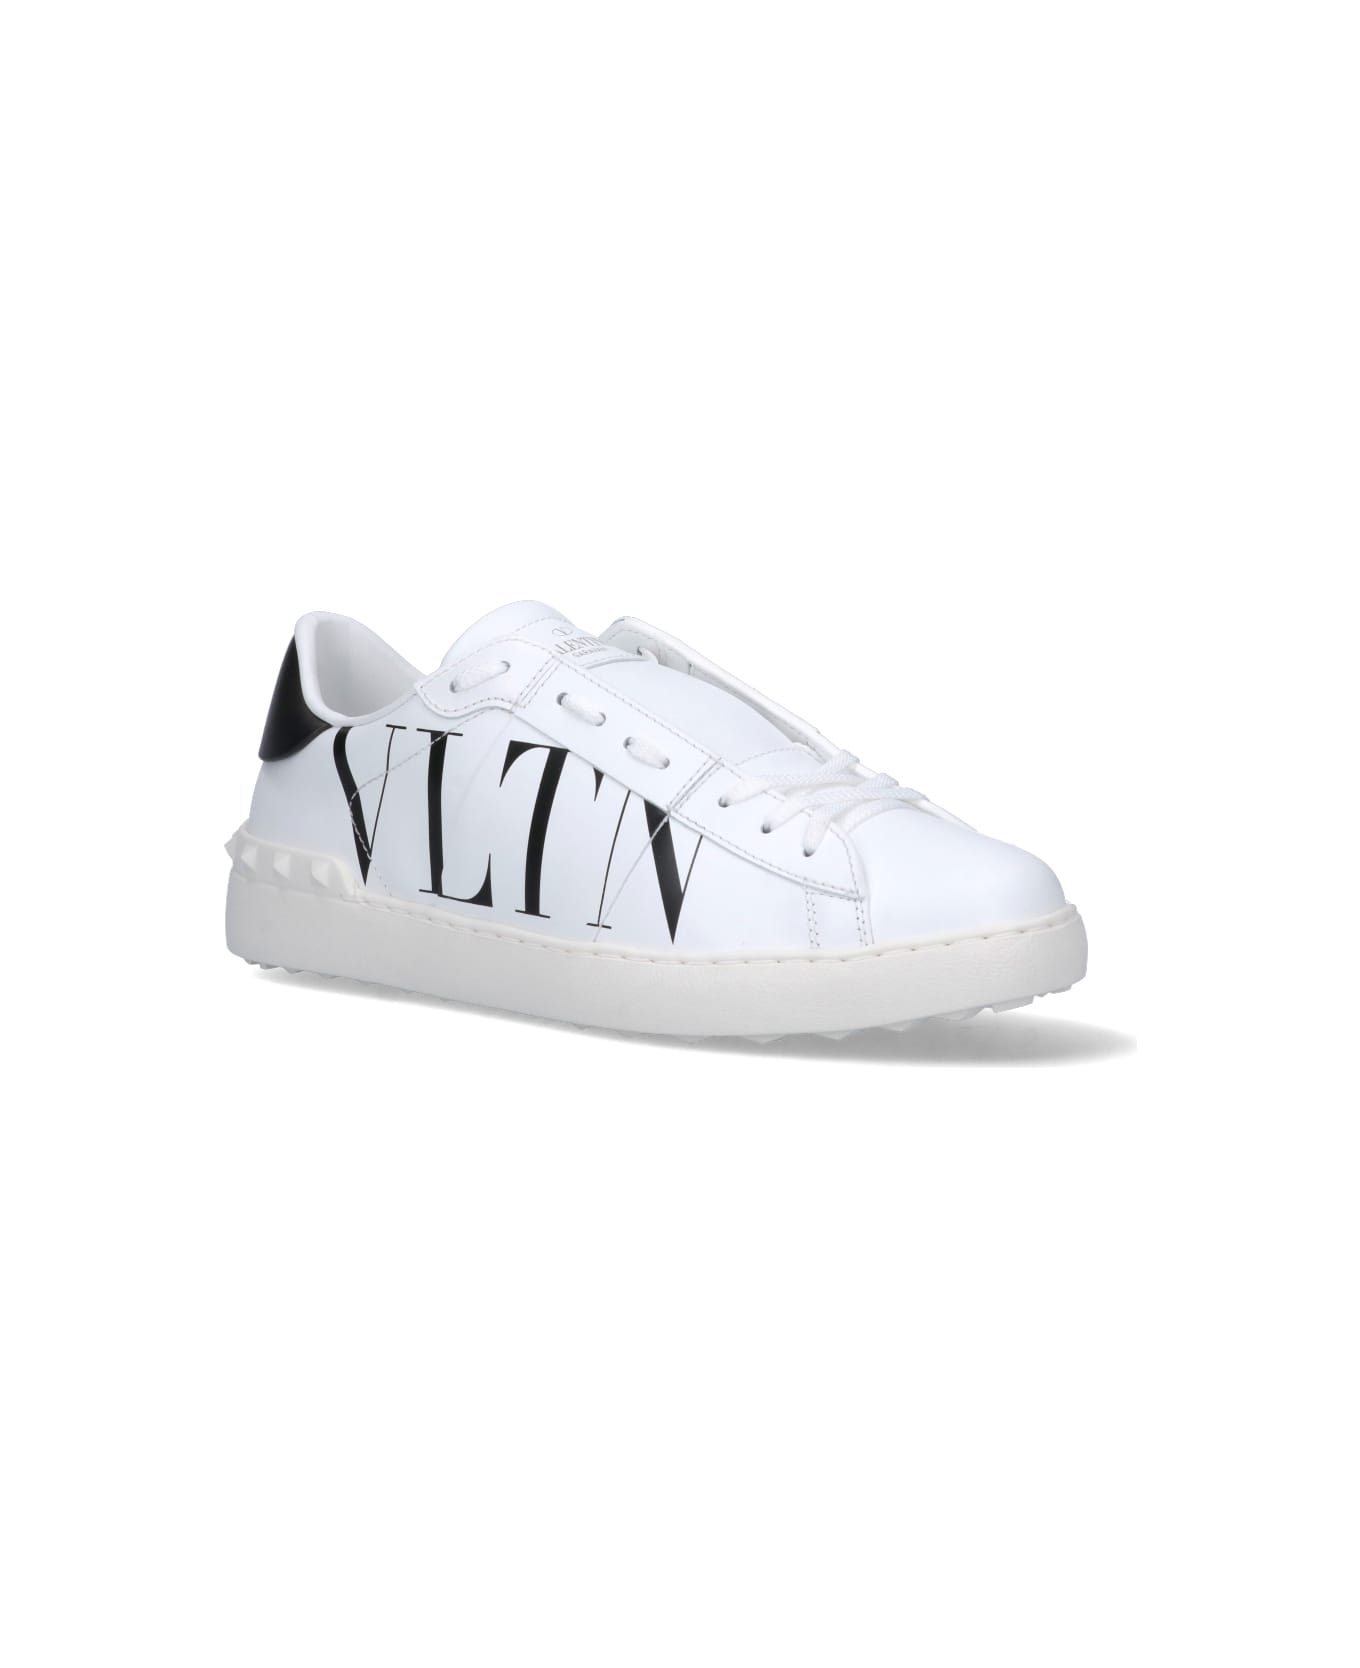 Valentino Garavani Garavani Vltn Sneakers - White